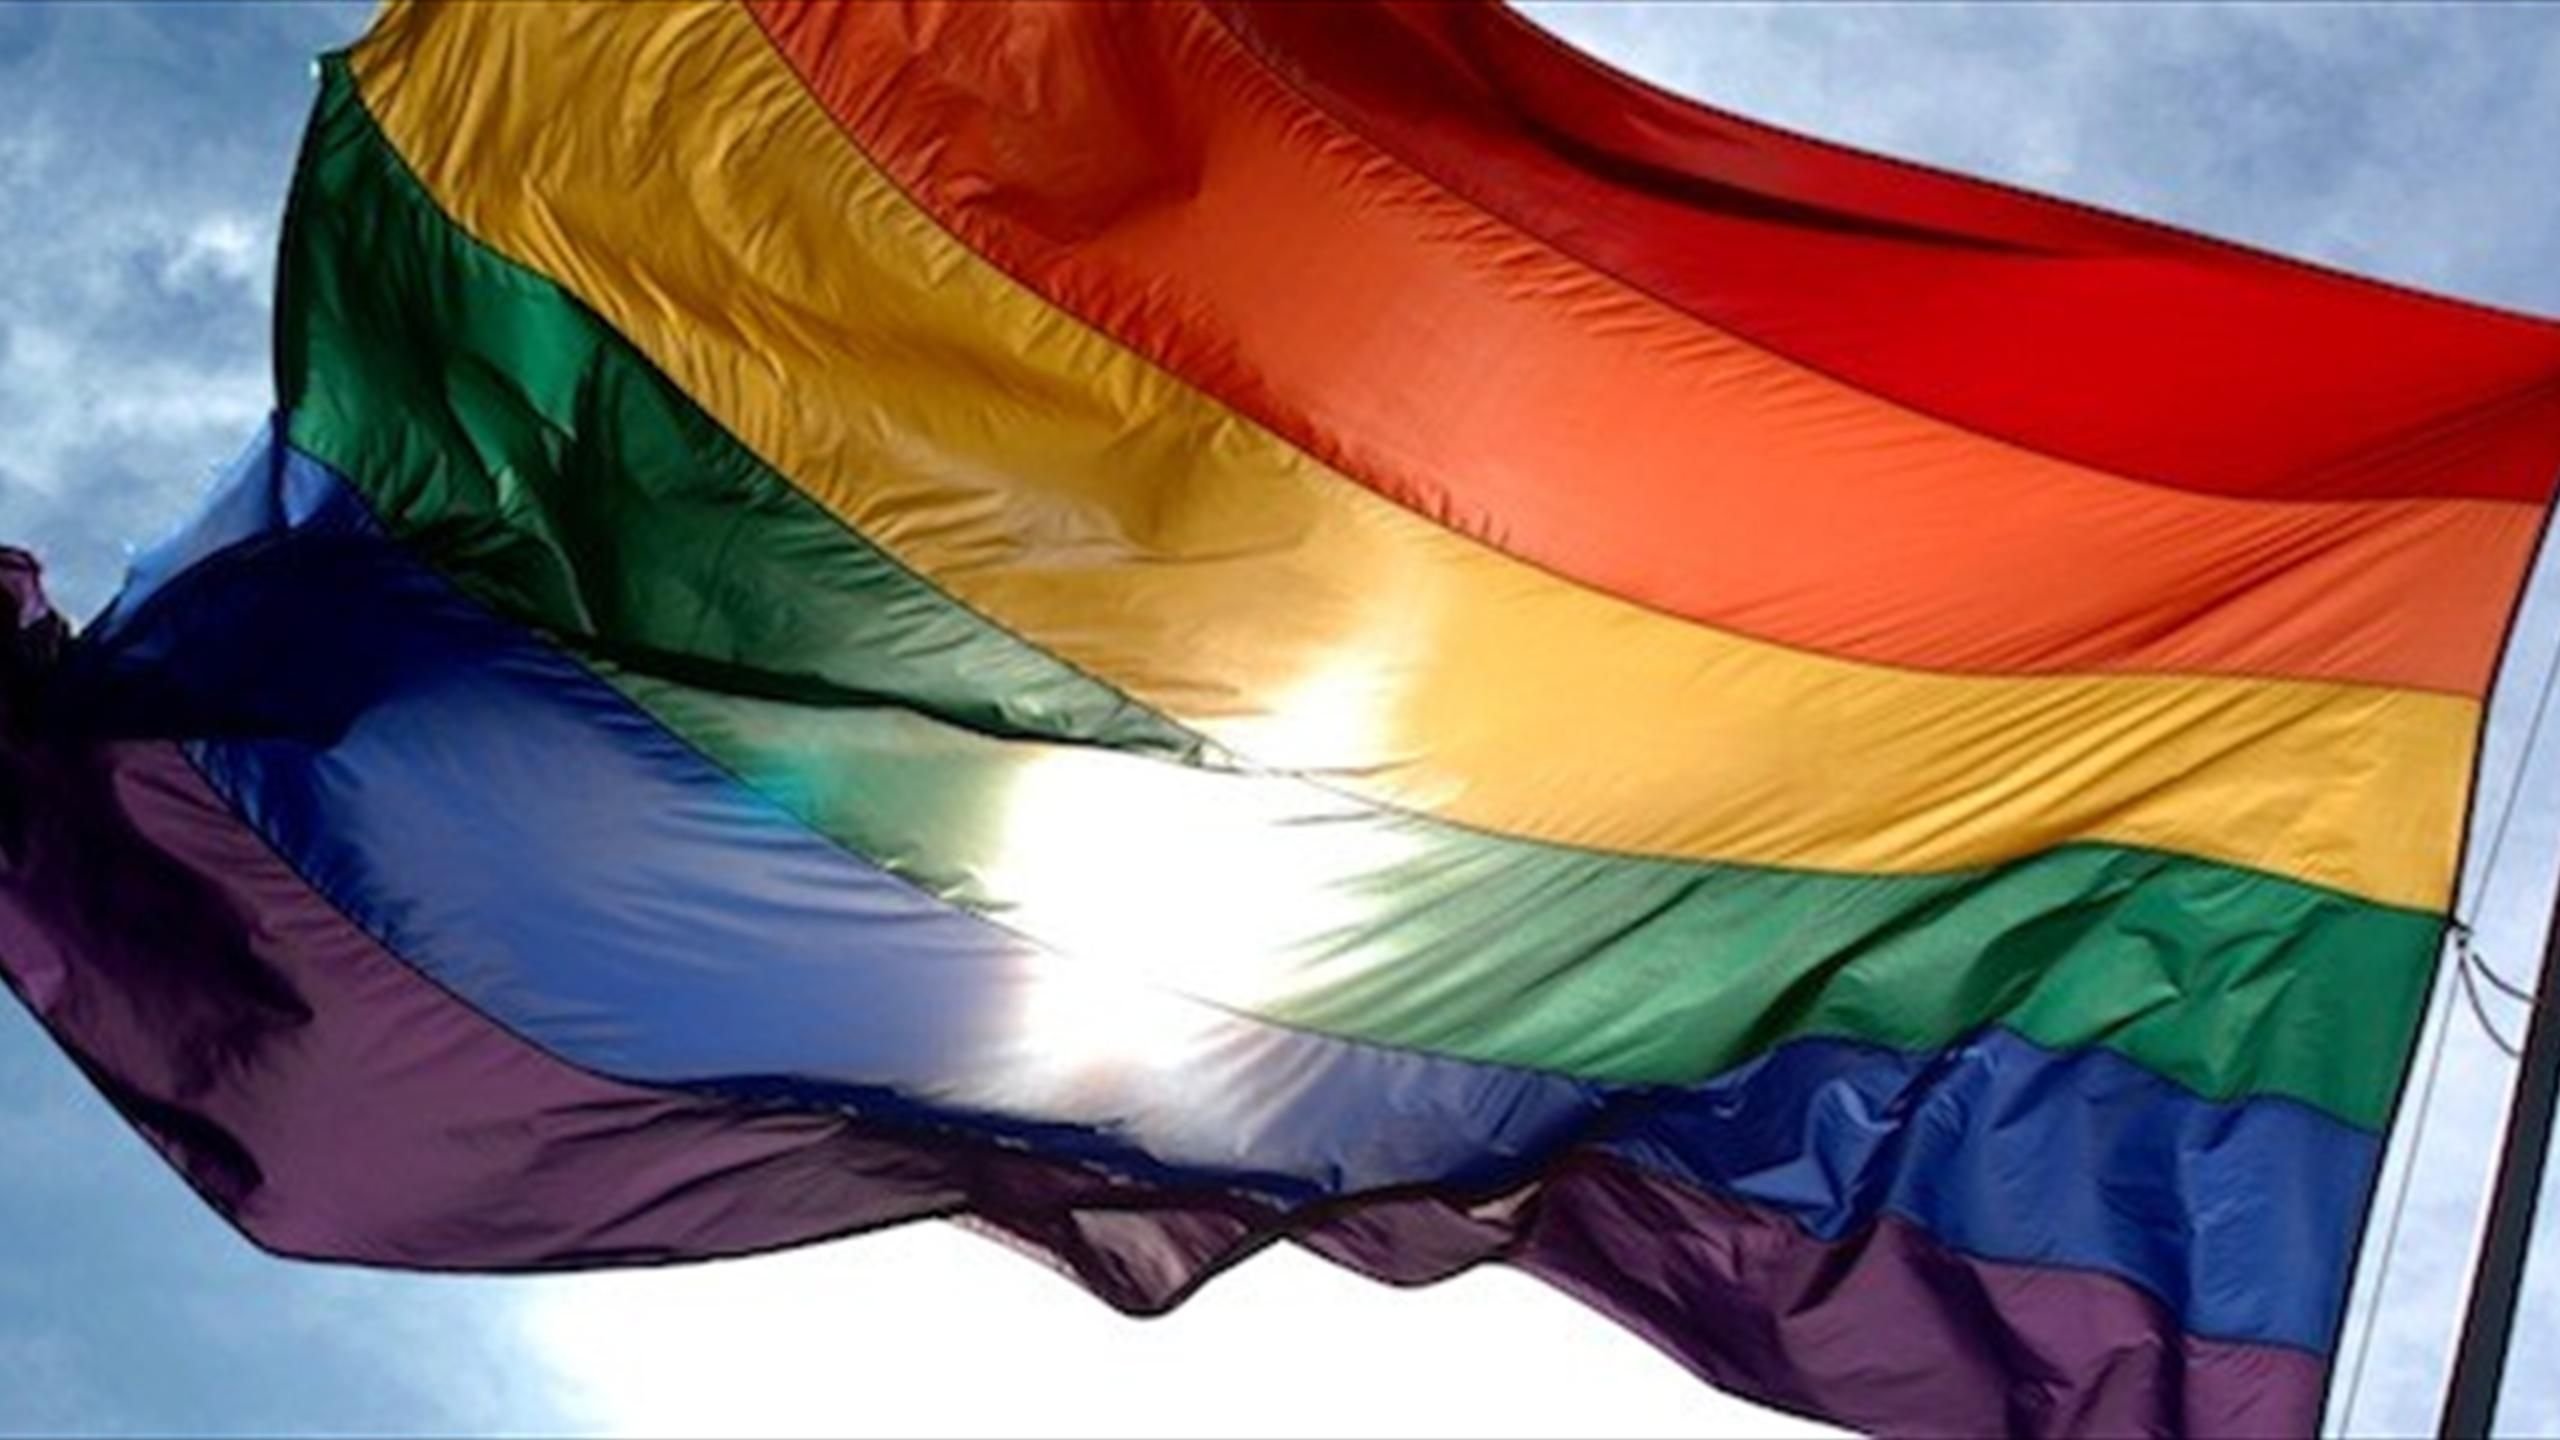 Радужный флаг, «женитьба» девушек, признания в гомосексуализме: перформансы от организации «Харьков Прайд». ФОТО, ВИДЕО